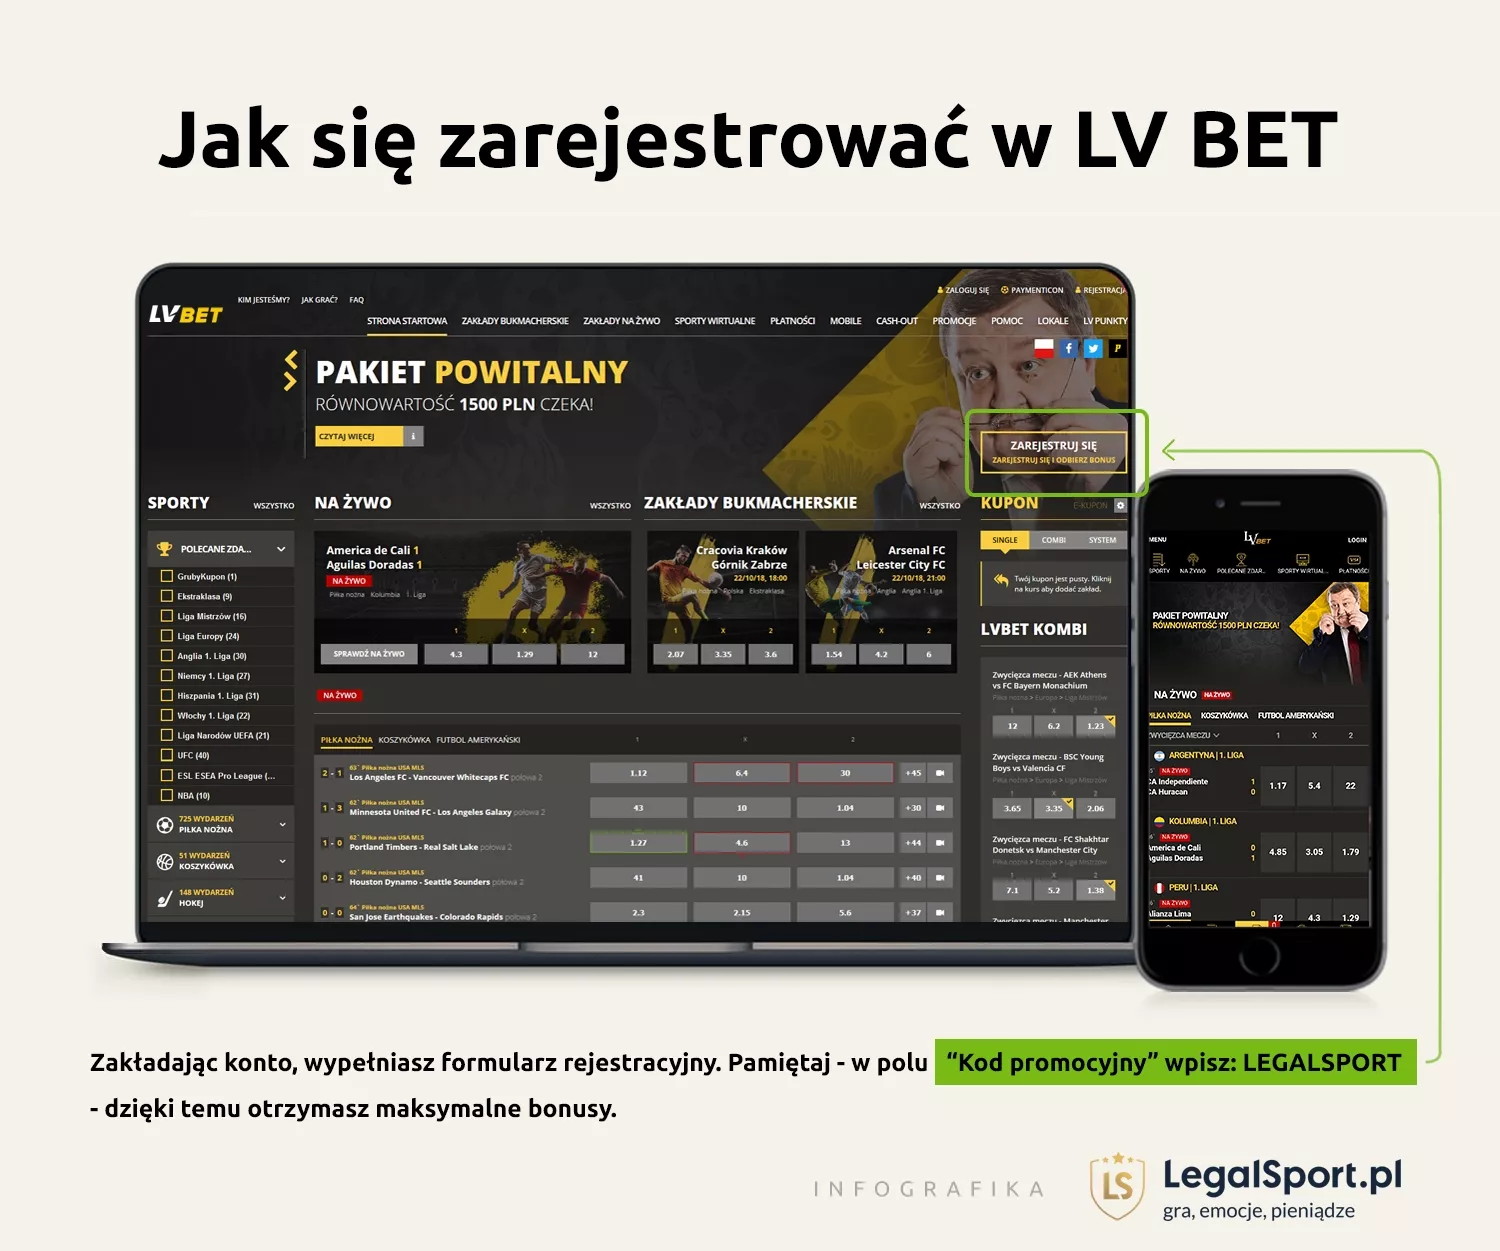 Jak założyć nowe konto online z kodem rejestracyjnym  LVBET Zakłady Bukmacherskie (aktualny kod: LEGALSPORT)